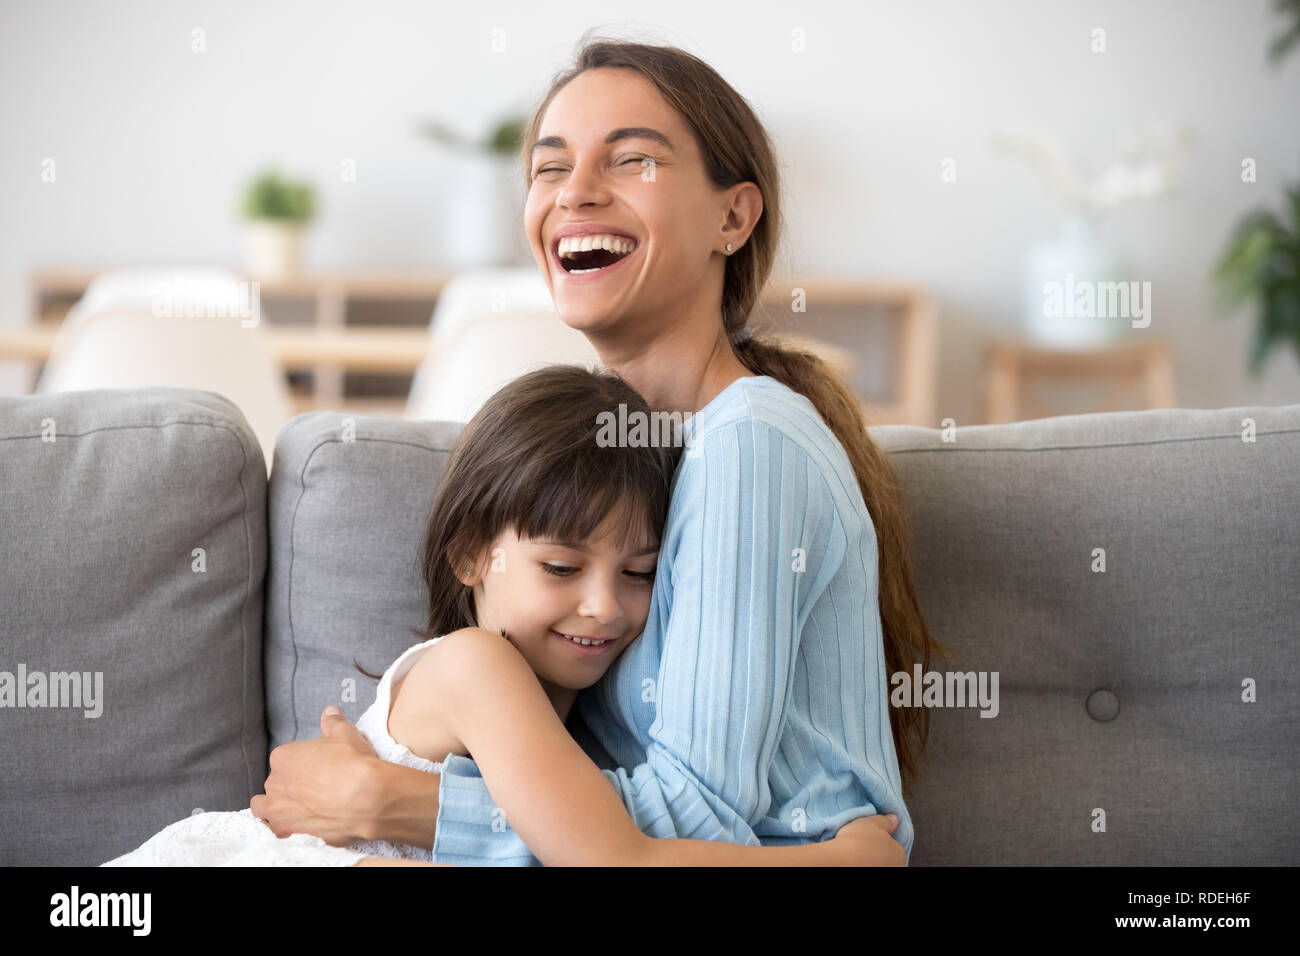 Fröhliche Mutter lachend umarmt cute kid Tochter auf Sof sitzen Stockfoto